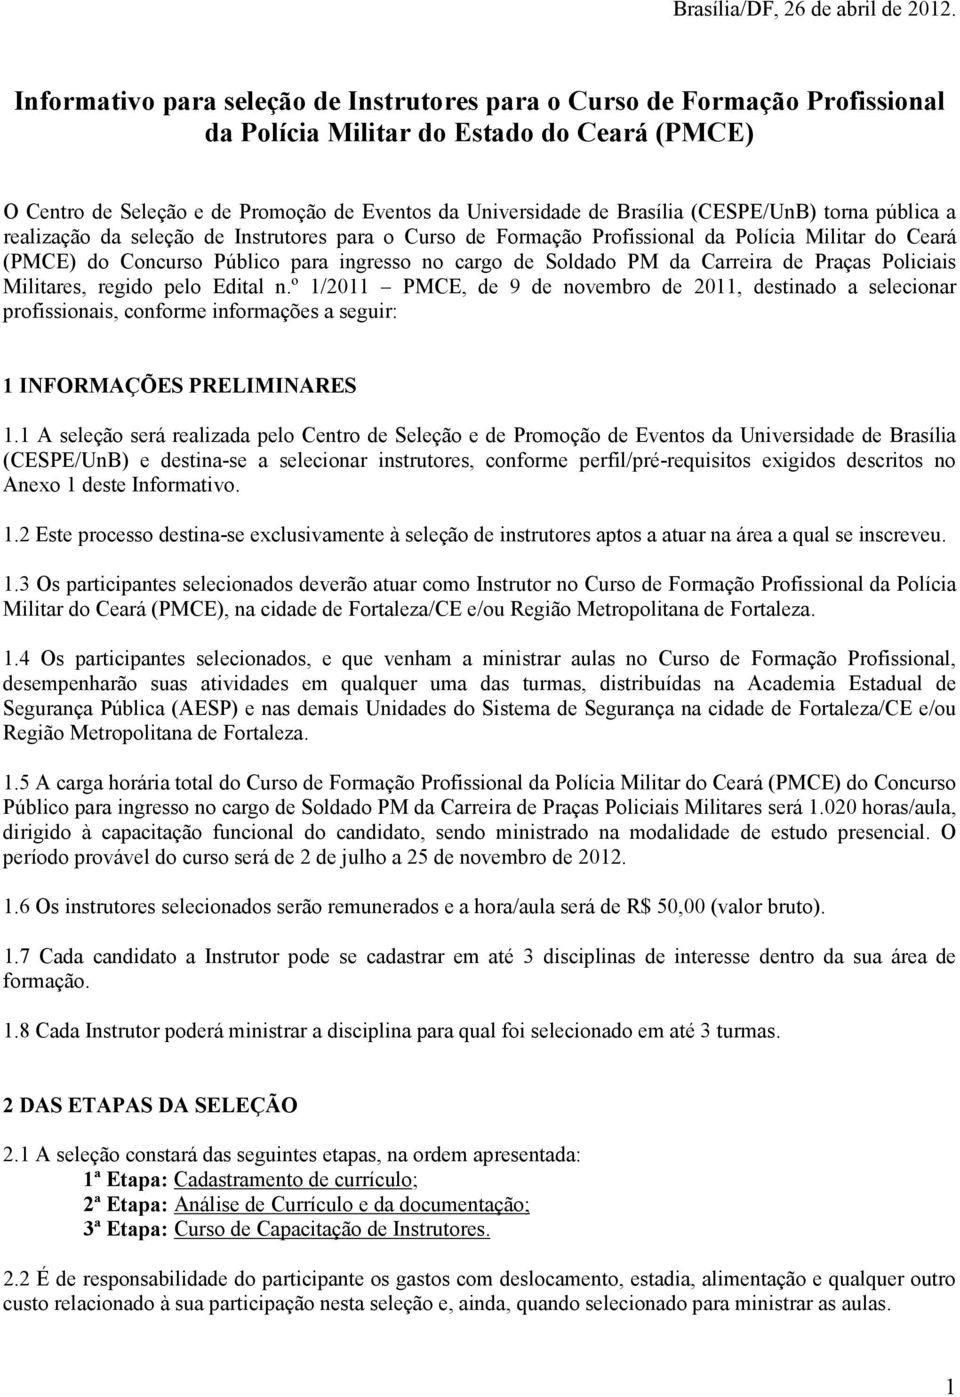 (CESPE/UnB) torna pública a realização da seleção de Instrutores para o Curso de Formação Profissional da Polícia Militar do Ceará (PMCE) do Concurso Público para ingresso no cargo de Soldado PM da